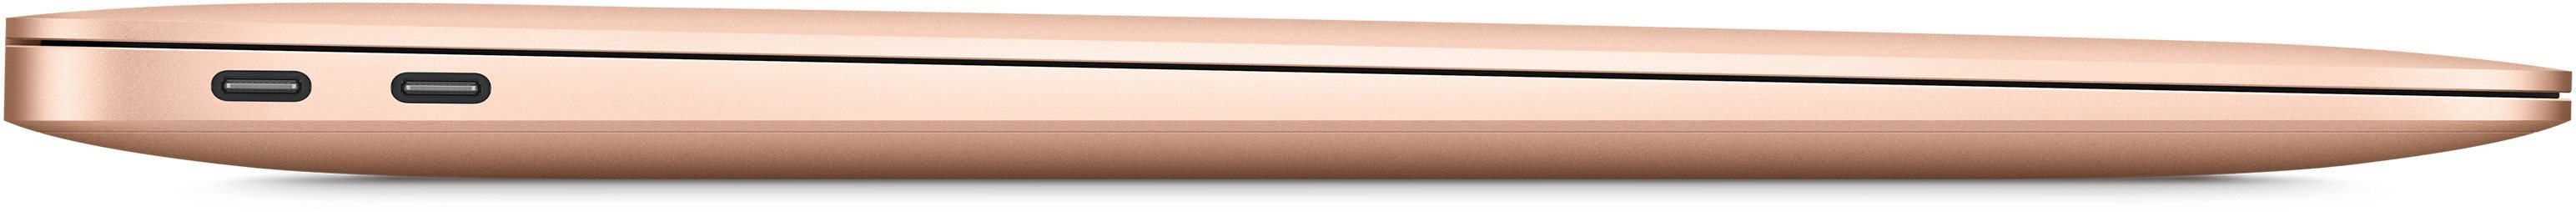 MacBook Air (2020) je veľmi tenký